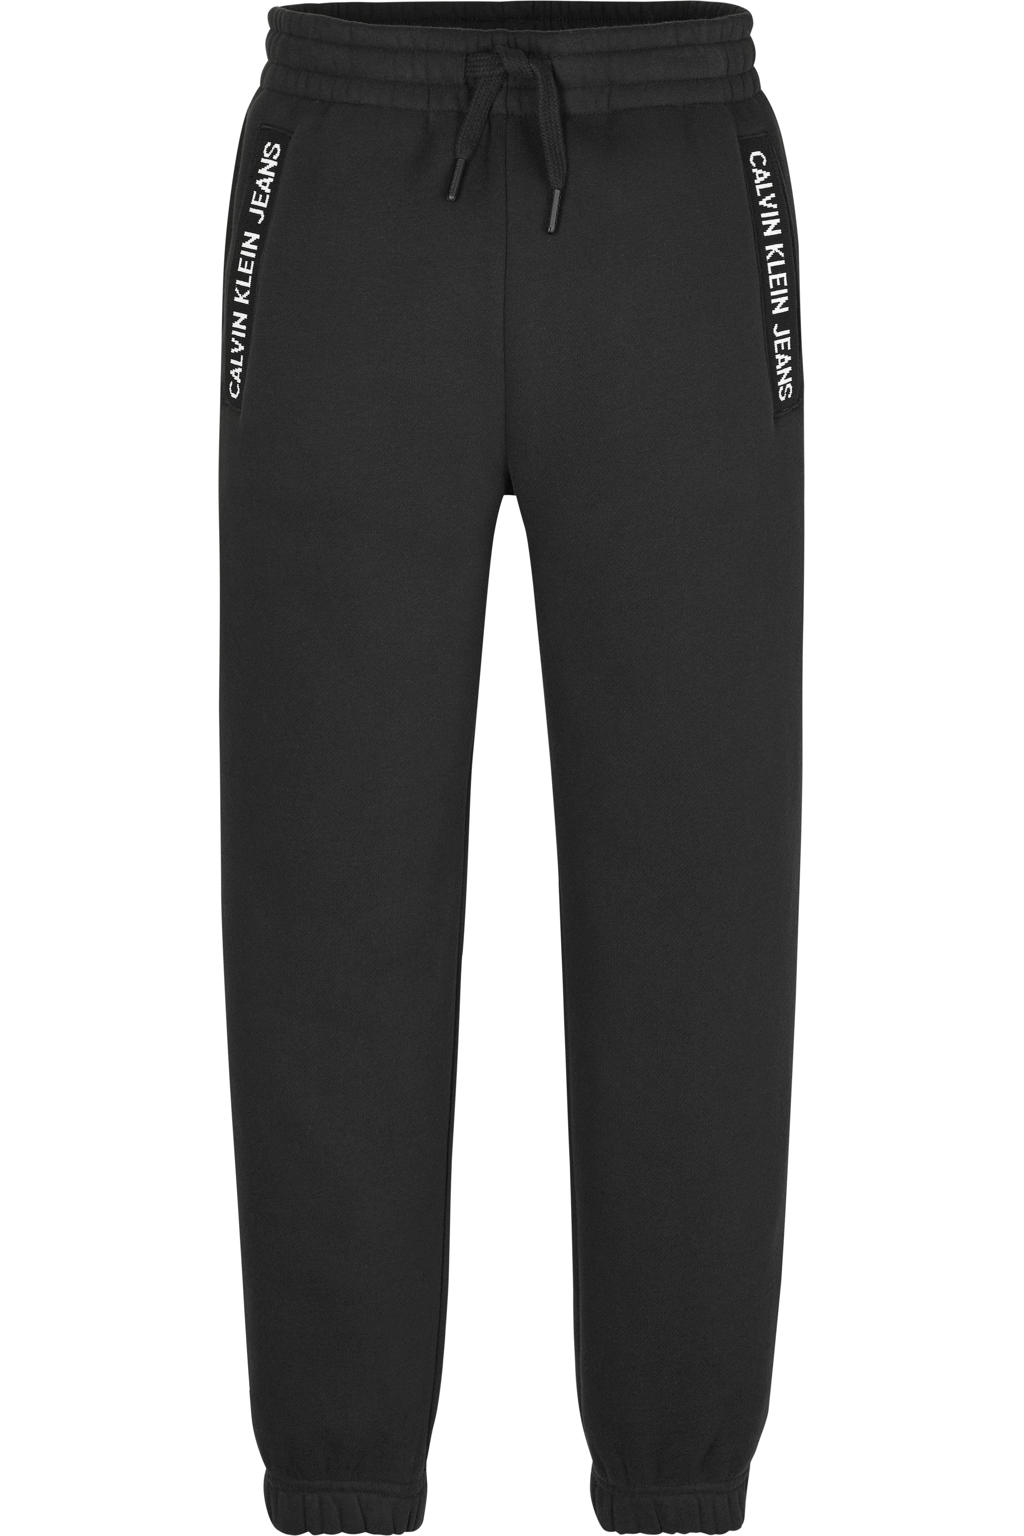 Zwarte jongens CALVIN KLEIN JEANS joggingbroek van duurzame sweatstof met regular waist, elastische tailleband met koord en logo dessin